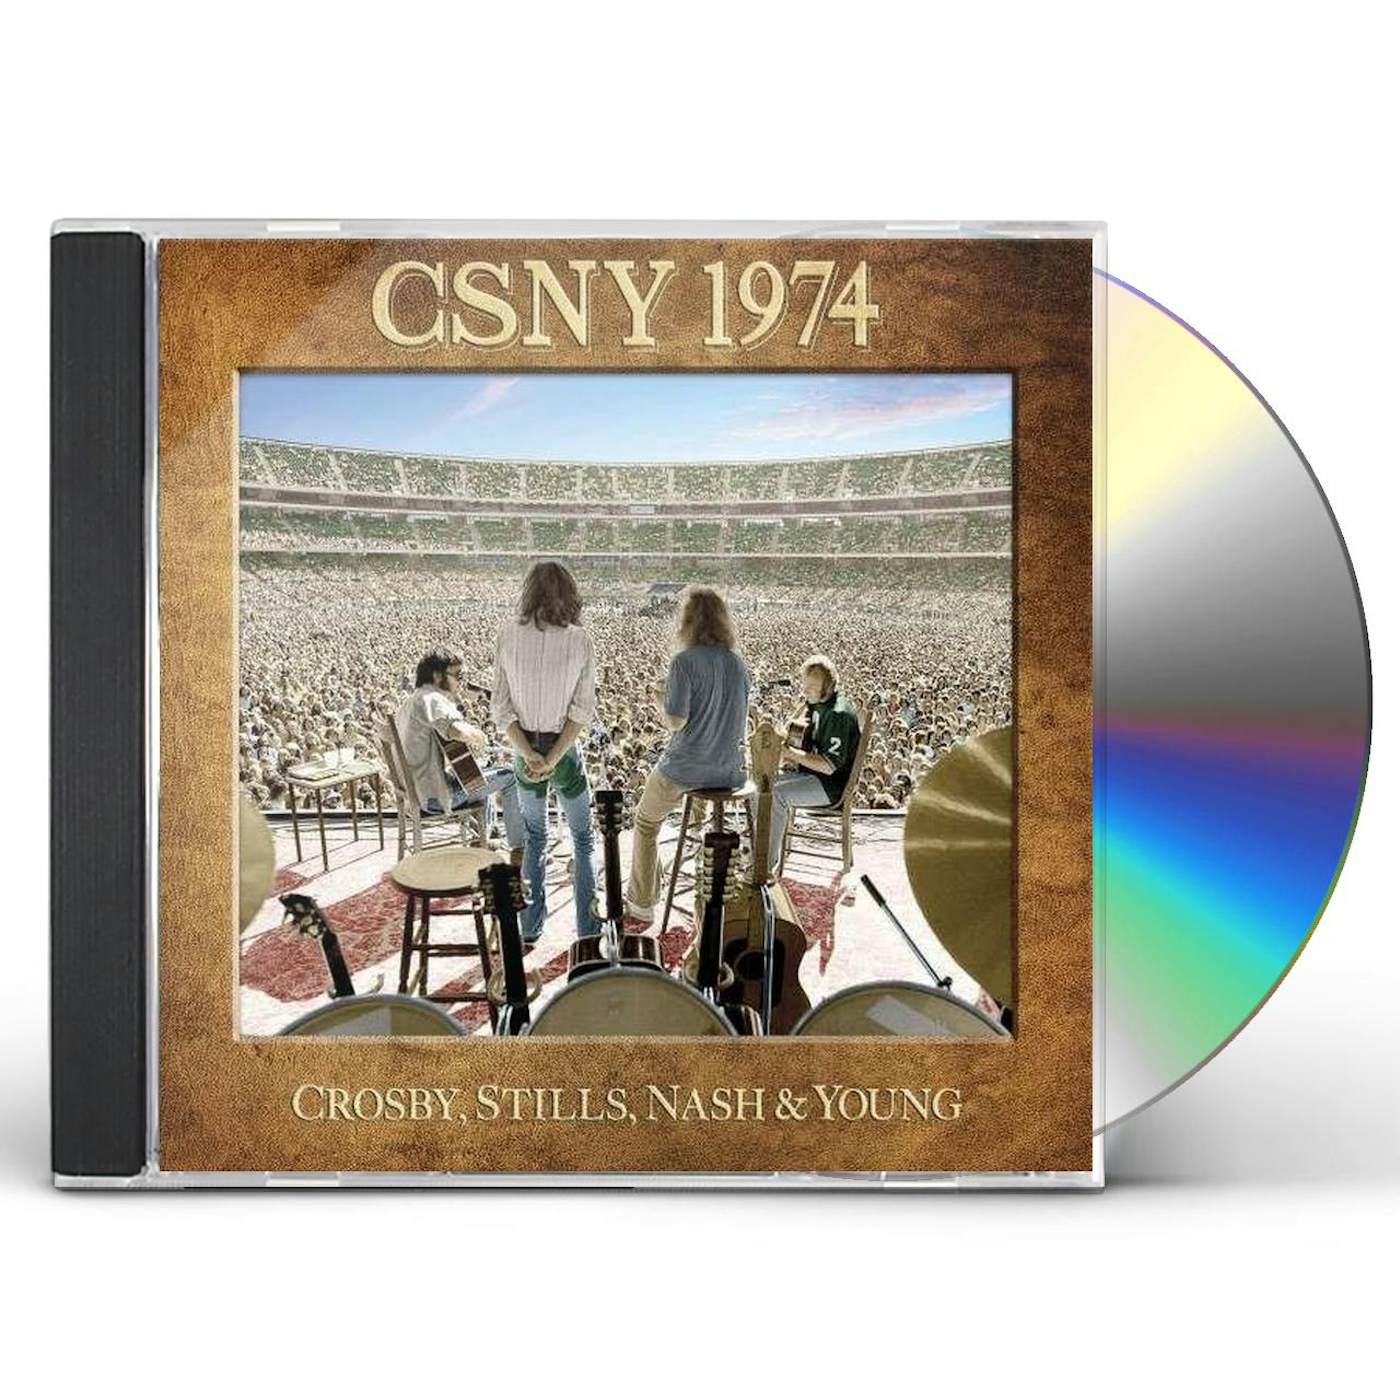 Crosby, Stills, Nash & Young CSNY 1974 CD